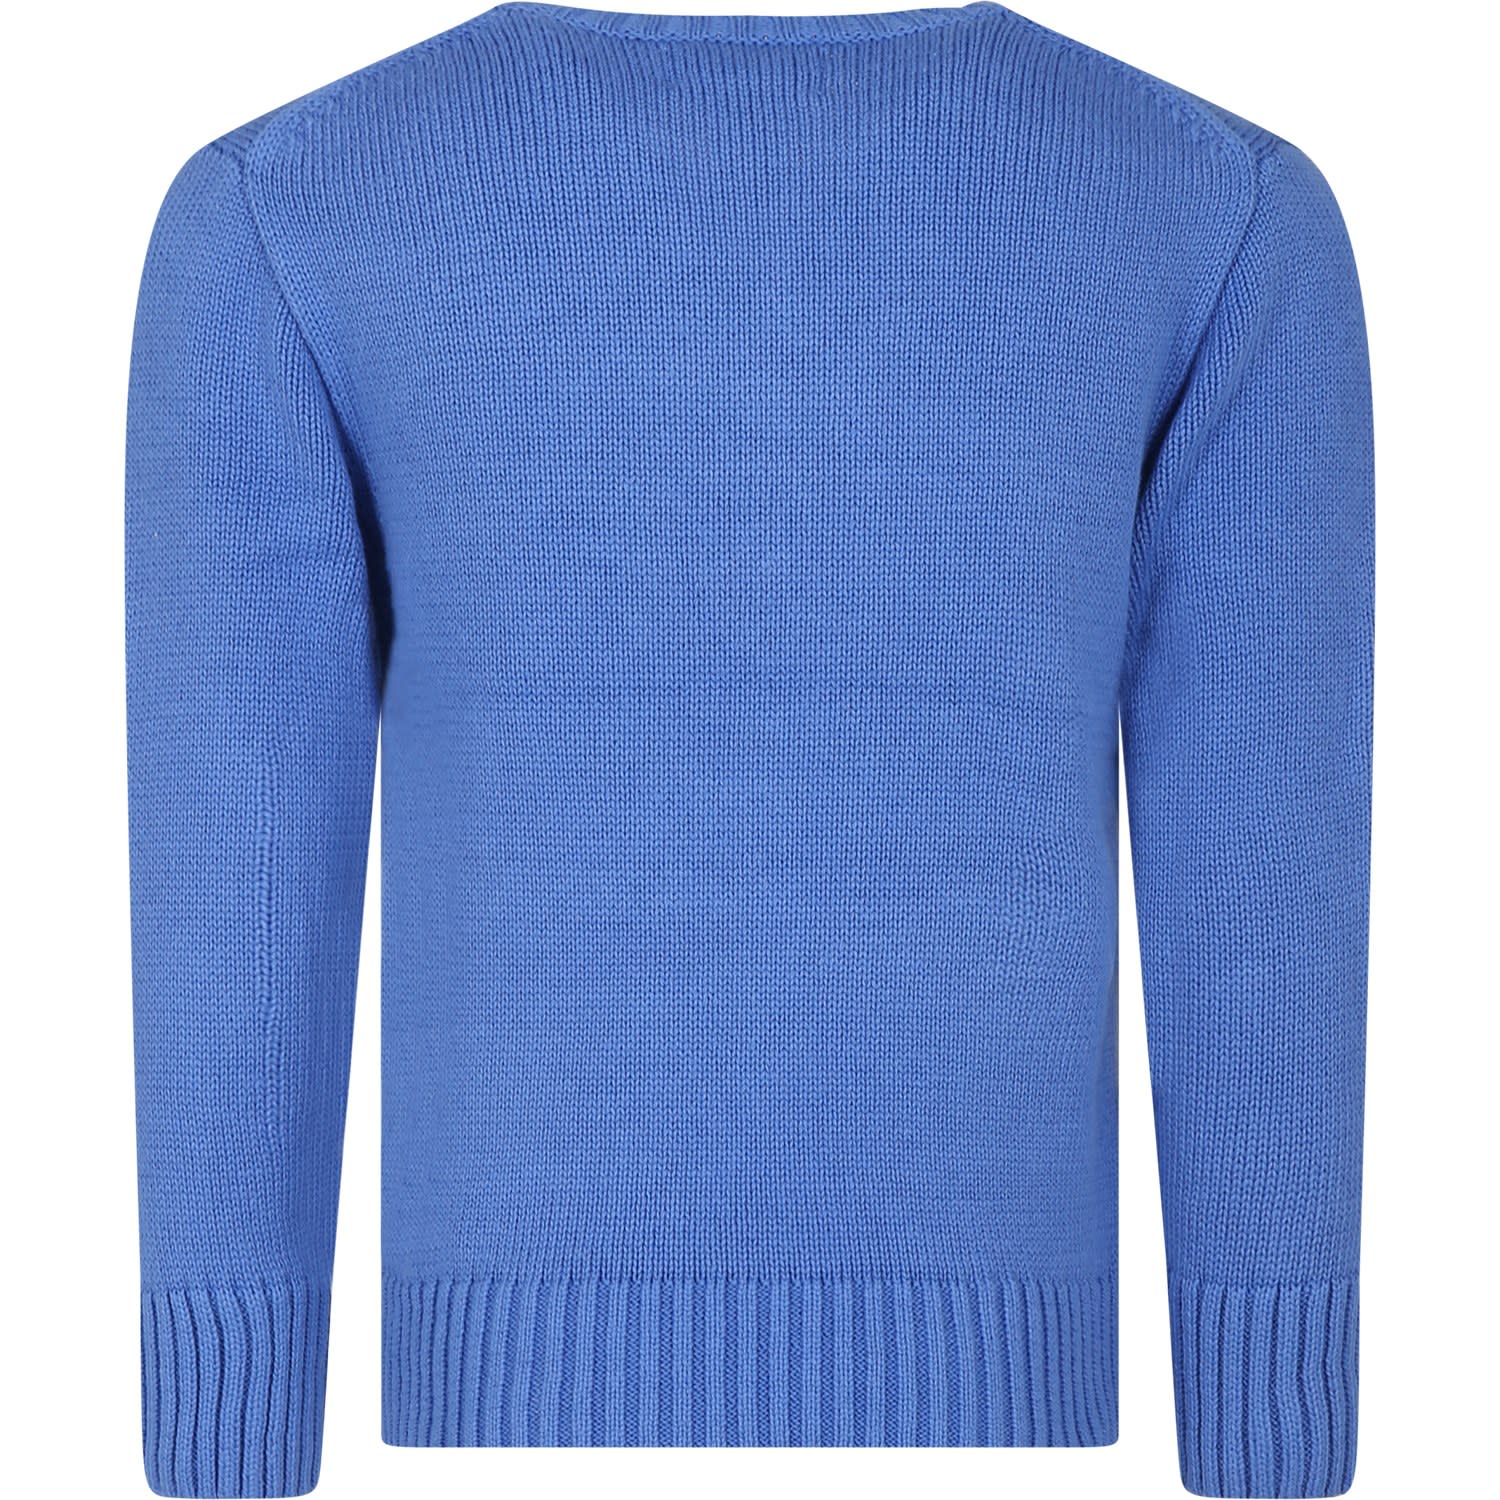 Shop Ralph Lauren Light Blue Sweater For Boy With Dog